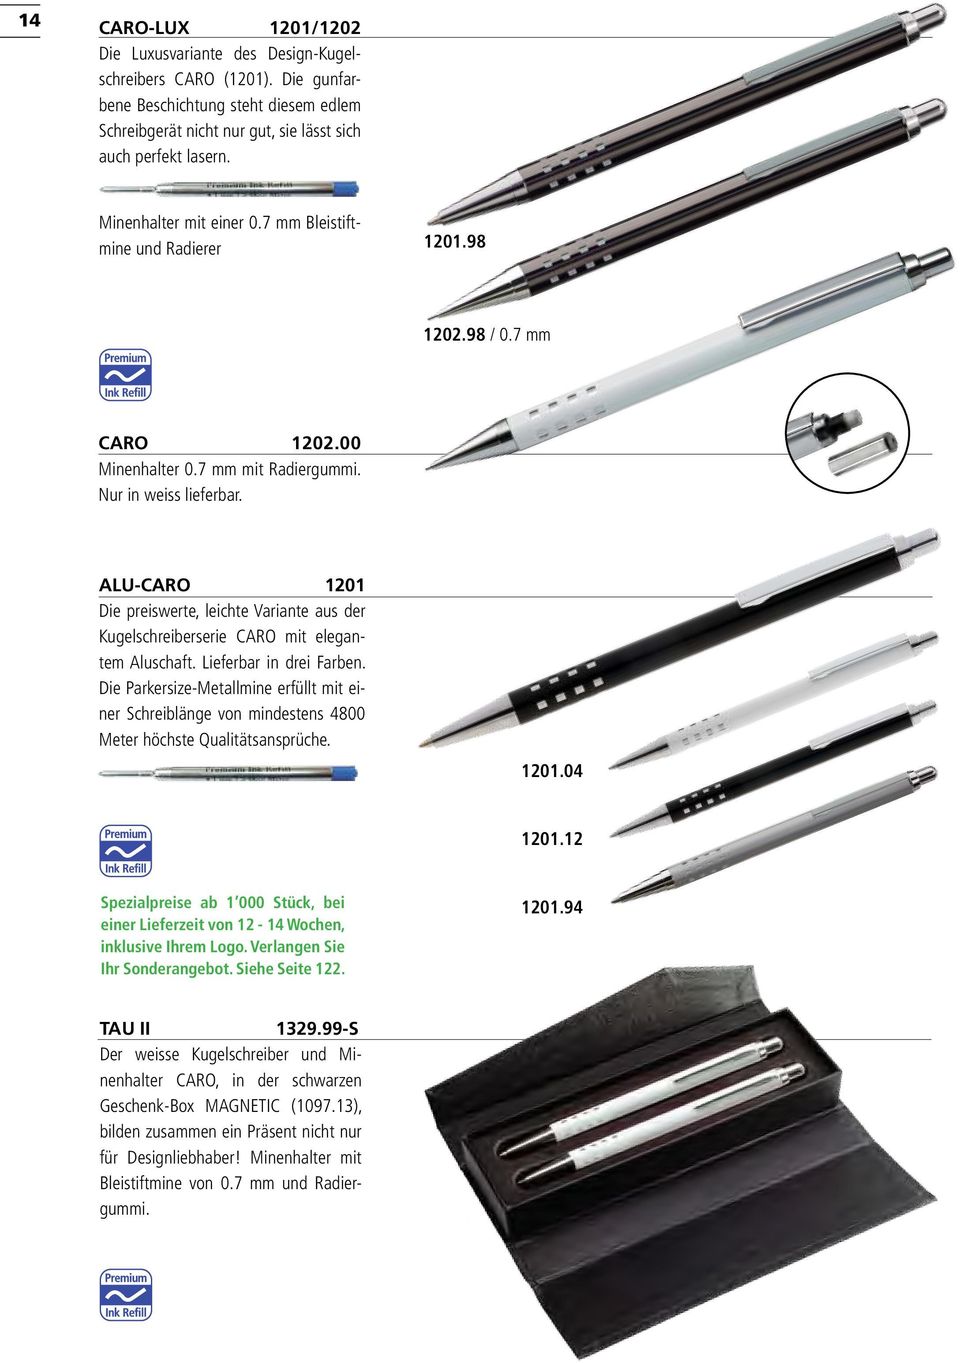 ALU-CARO 1201 Die preiswerte, leichte Variante aus der Kugelschreiberserie CARO mit elegantem Aluschaft. Lieferbar in drei Farben.